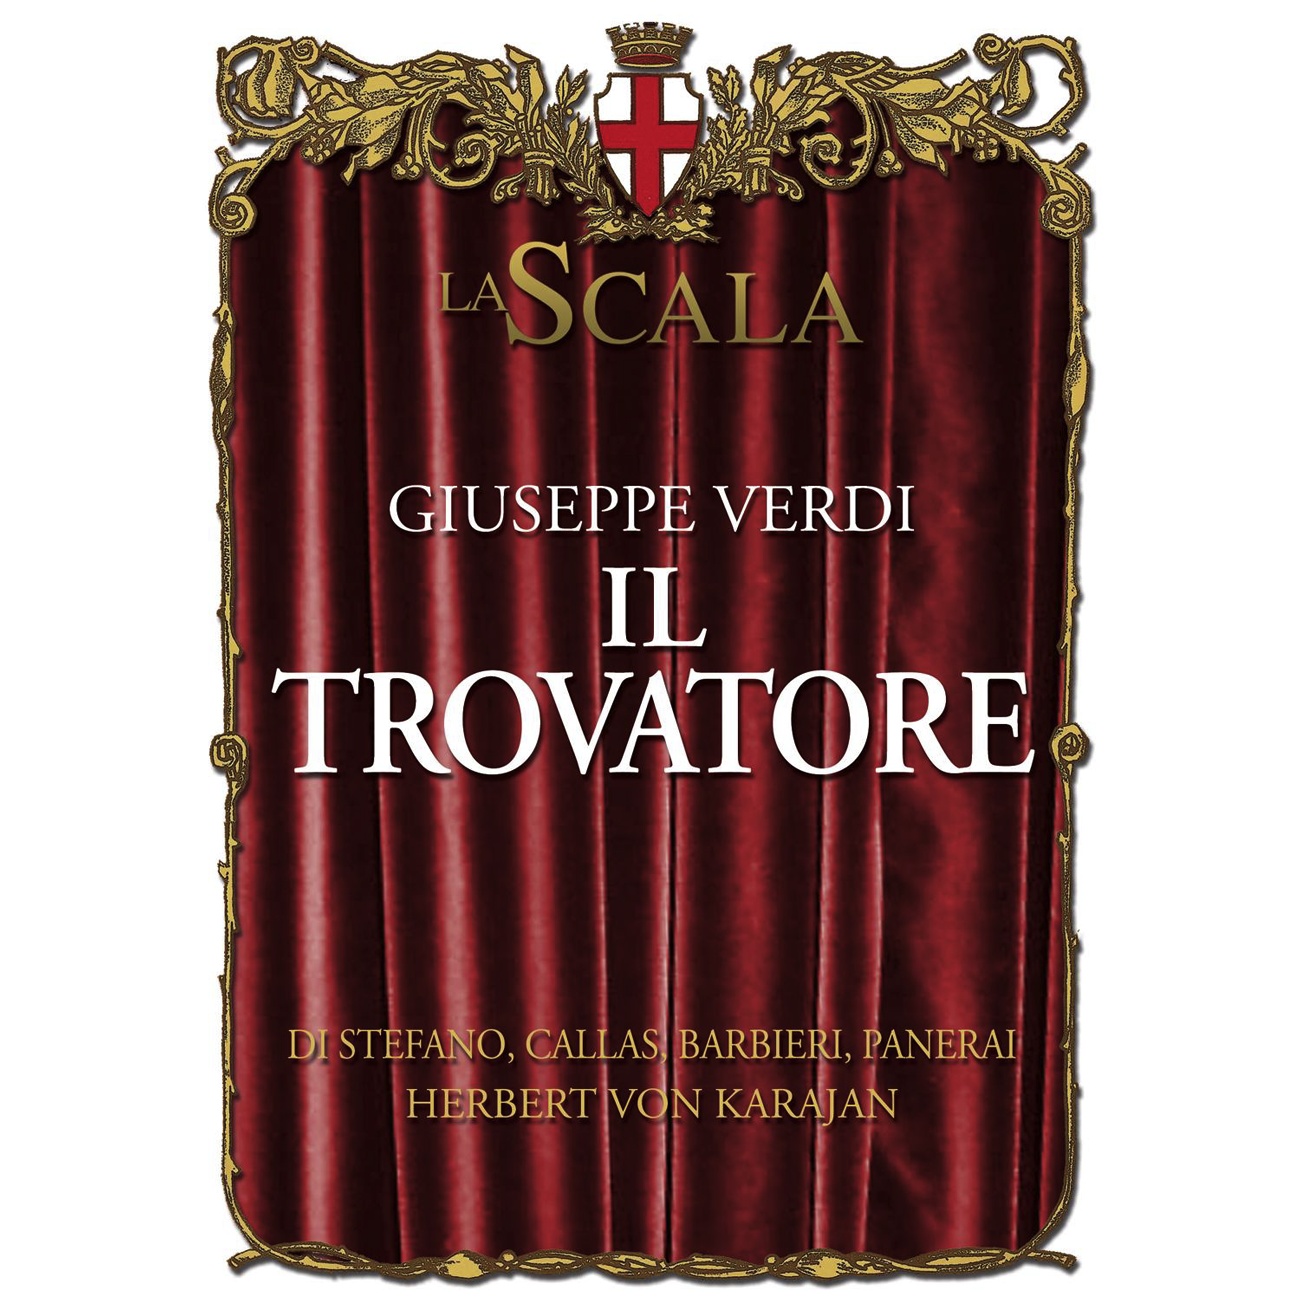 Il Trovatore (1997 Digital Remaster), ACT 4 Scene One: Mira, d'acerbe lagrime